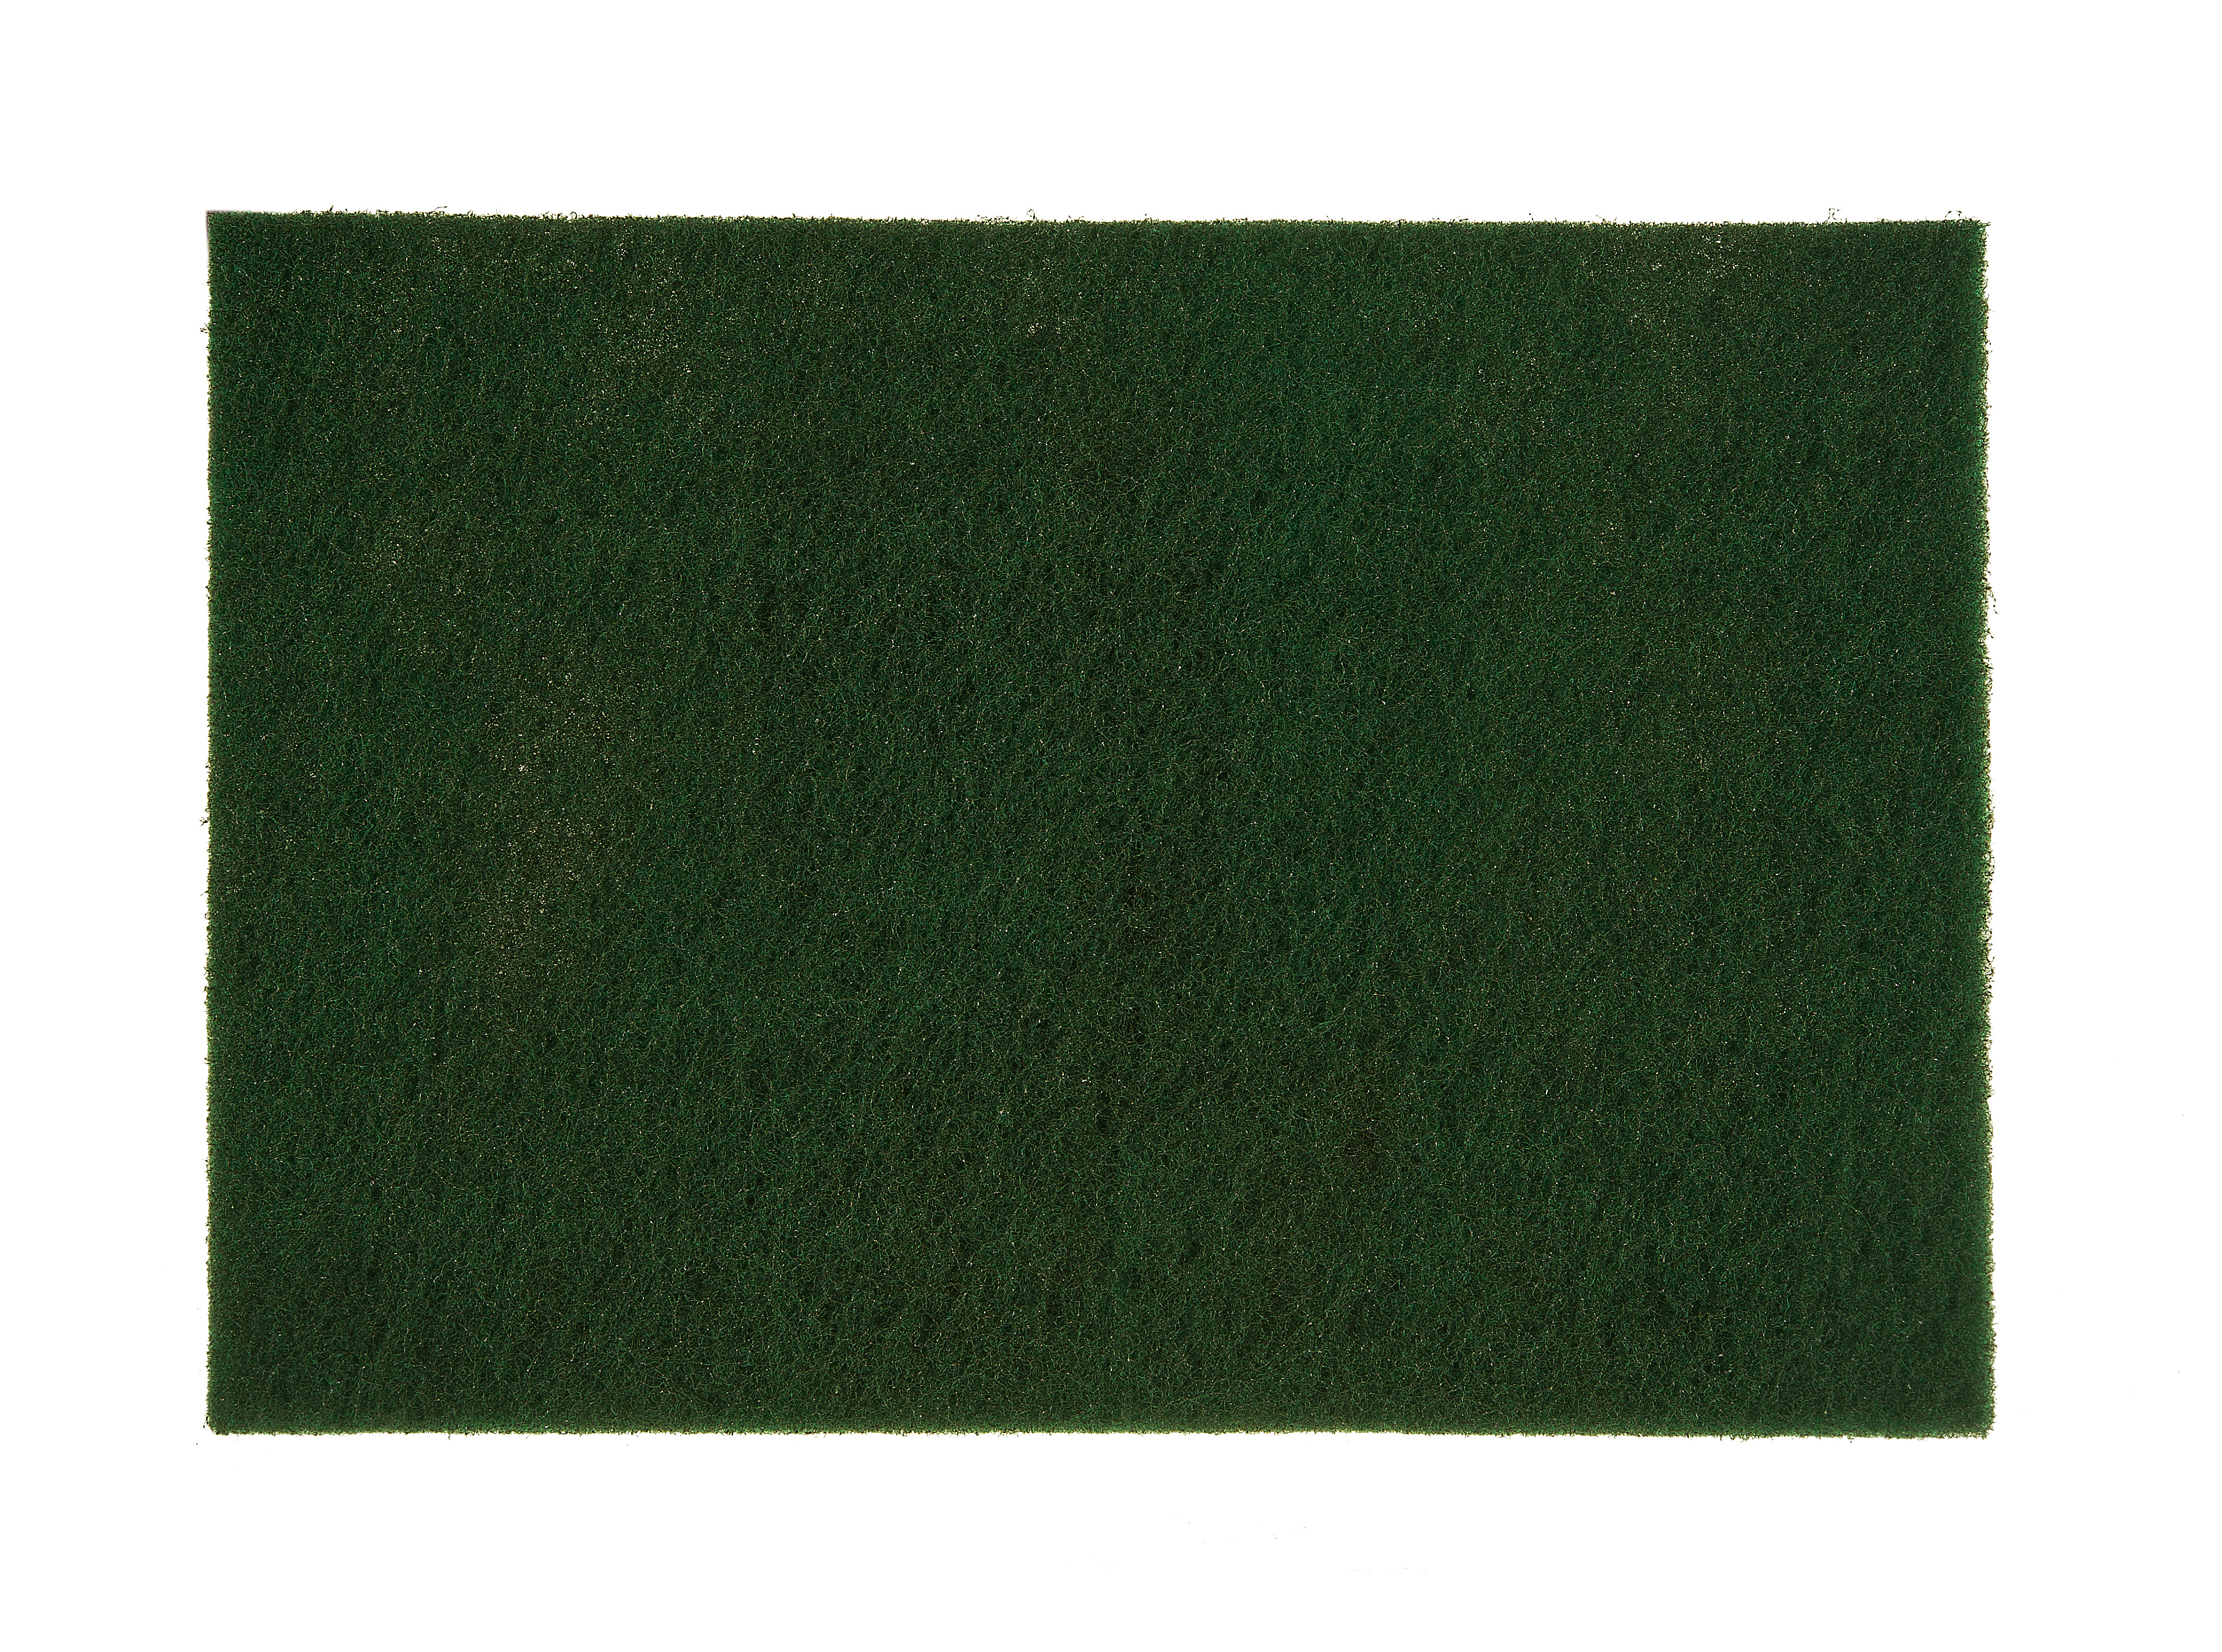 Cf.20 foglietti mirlon 152x229mm. gr.gp 320(verde)